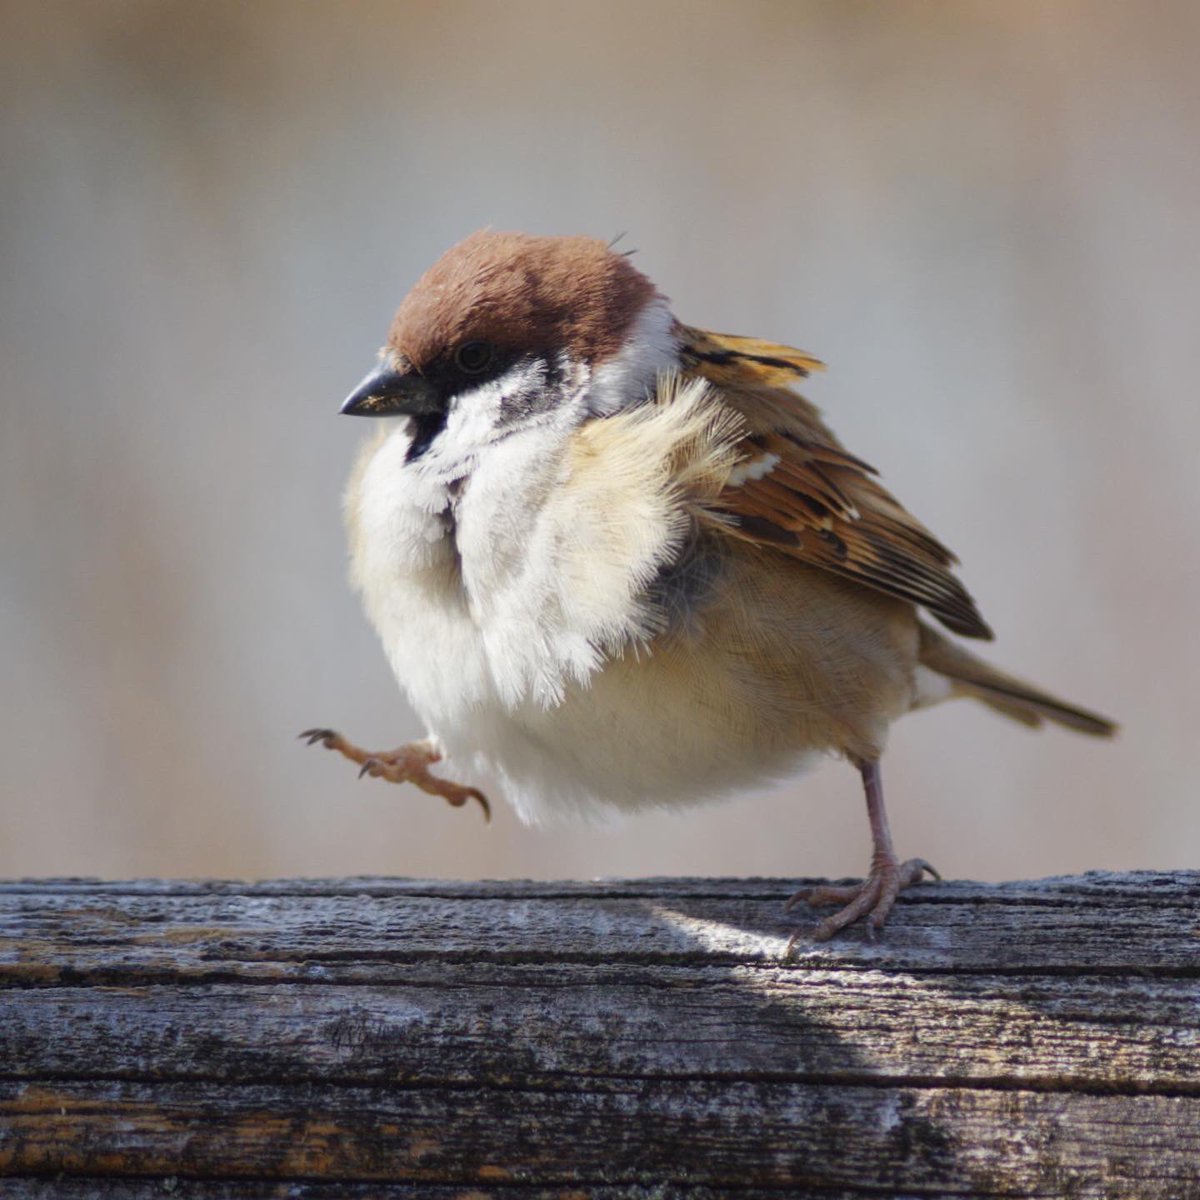 スズメの一歩

#雀 #スズメ #すずめ #sparrow #鳥 #小鳥 #野鳥 #スズメギャラリー #スズメ写真集 #bird https://t.co/DHKgoI69wM